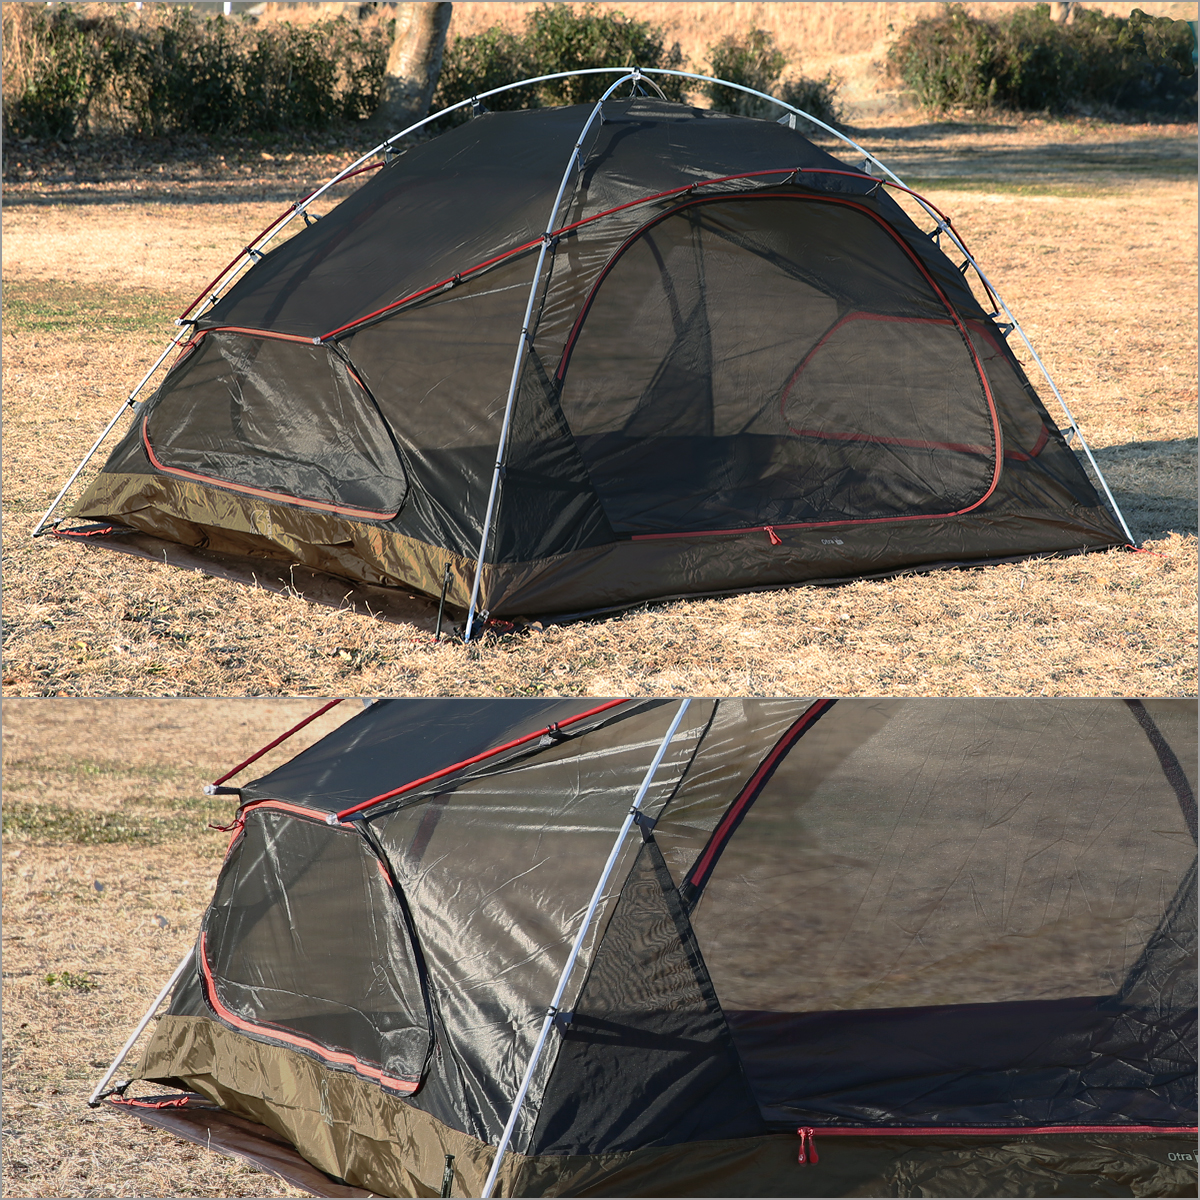 ノルディスク オトラ 2 テント ダークオリーブ 122063 2人用 ドーム型テント Tent Dark Olive Nordisk Otra 2  PU